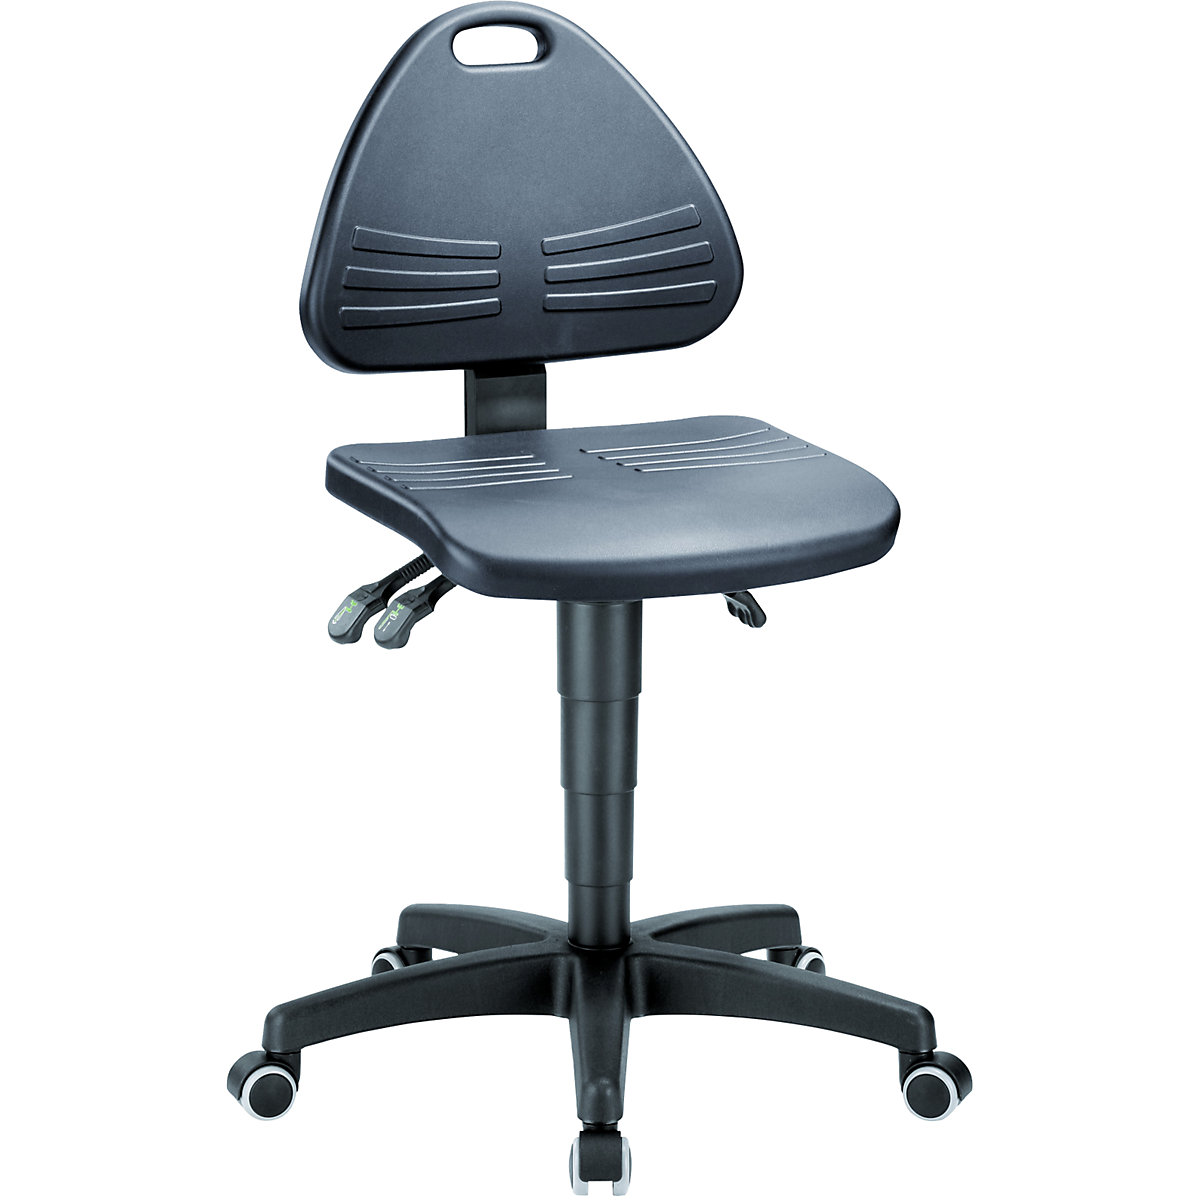 Pracovná otočná stolička – bimos, čalúnená s PU penou, s kolieskami, rozsah prestavenia výšky 430 – 600 mm-4